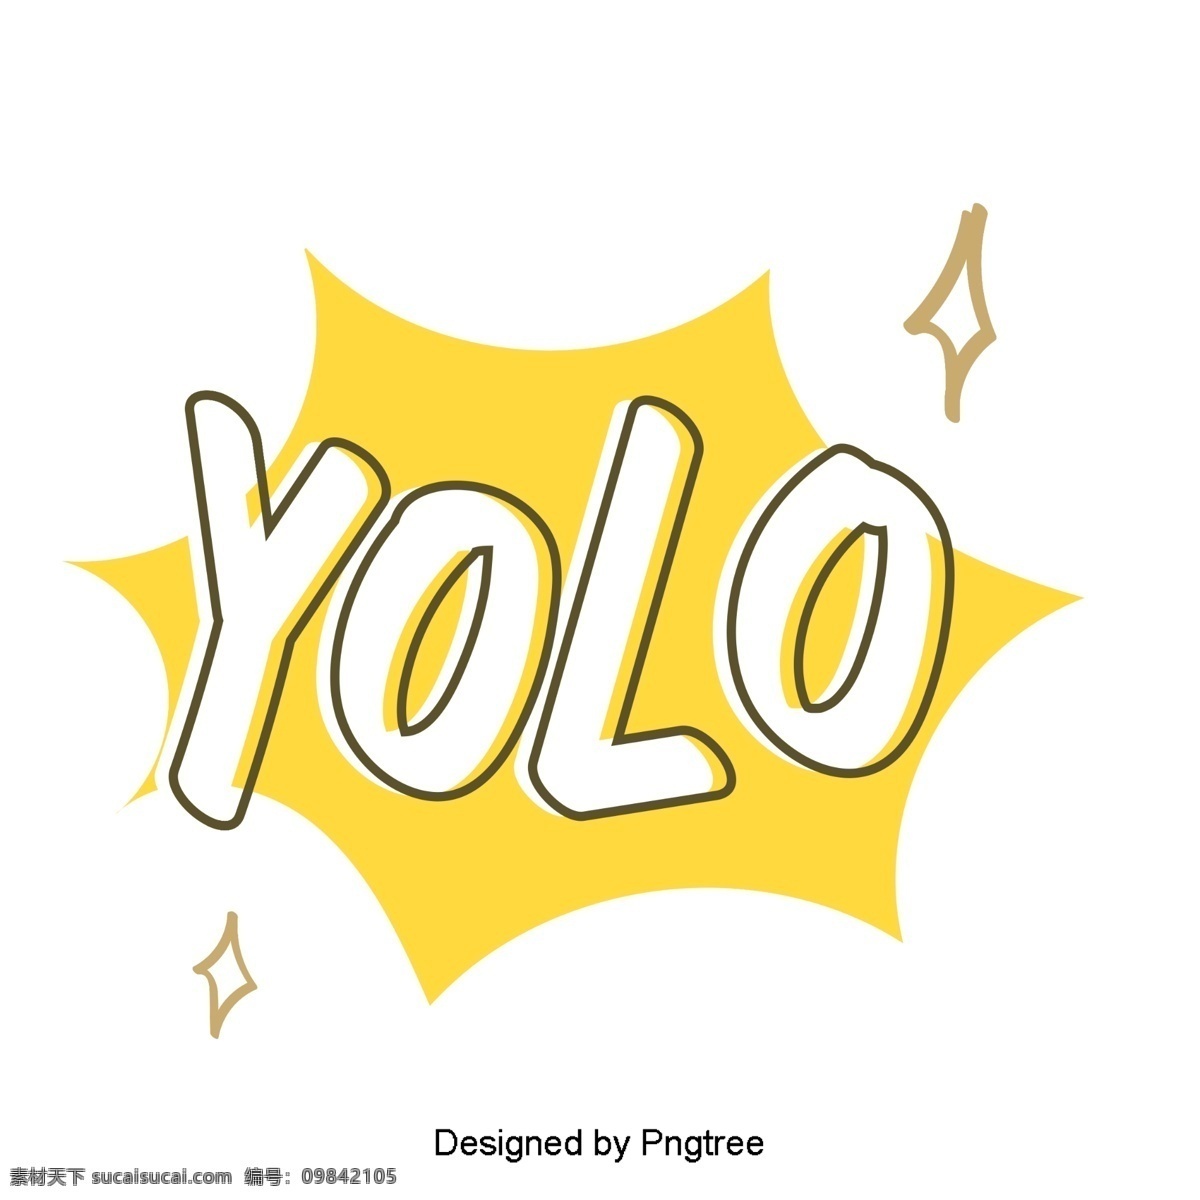 韩国 可爱 的卡 通 风格 yolo 元素 常用 单词 意思 手 种 字体 黄色 whisperwind 卡通 移动支付